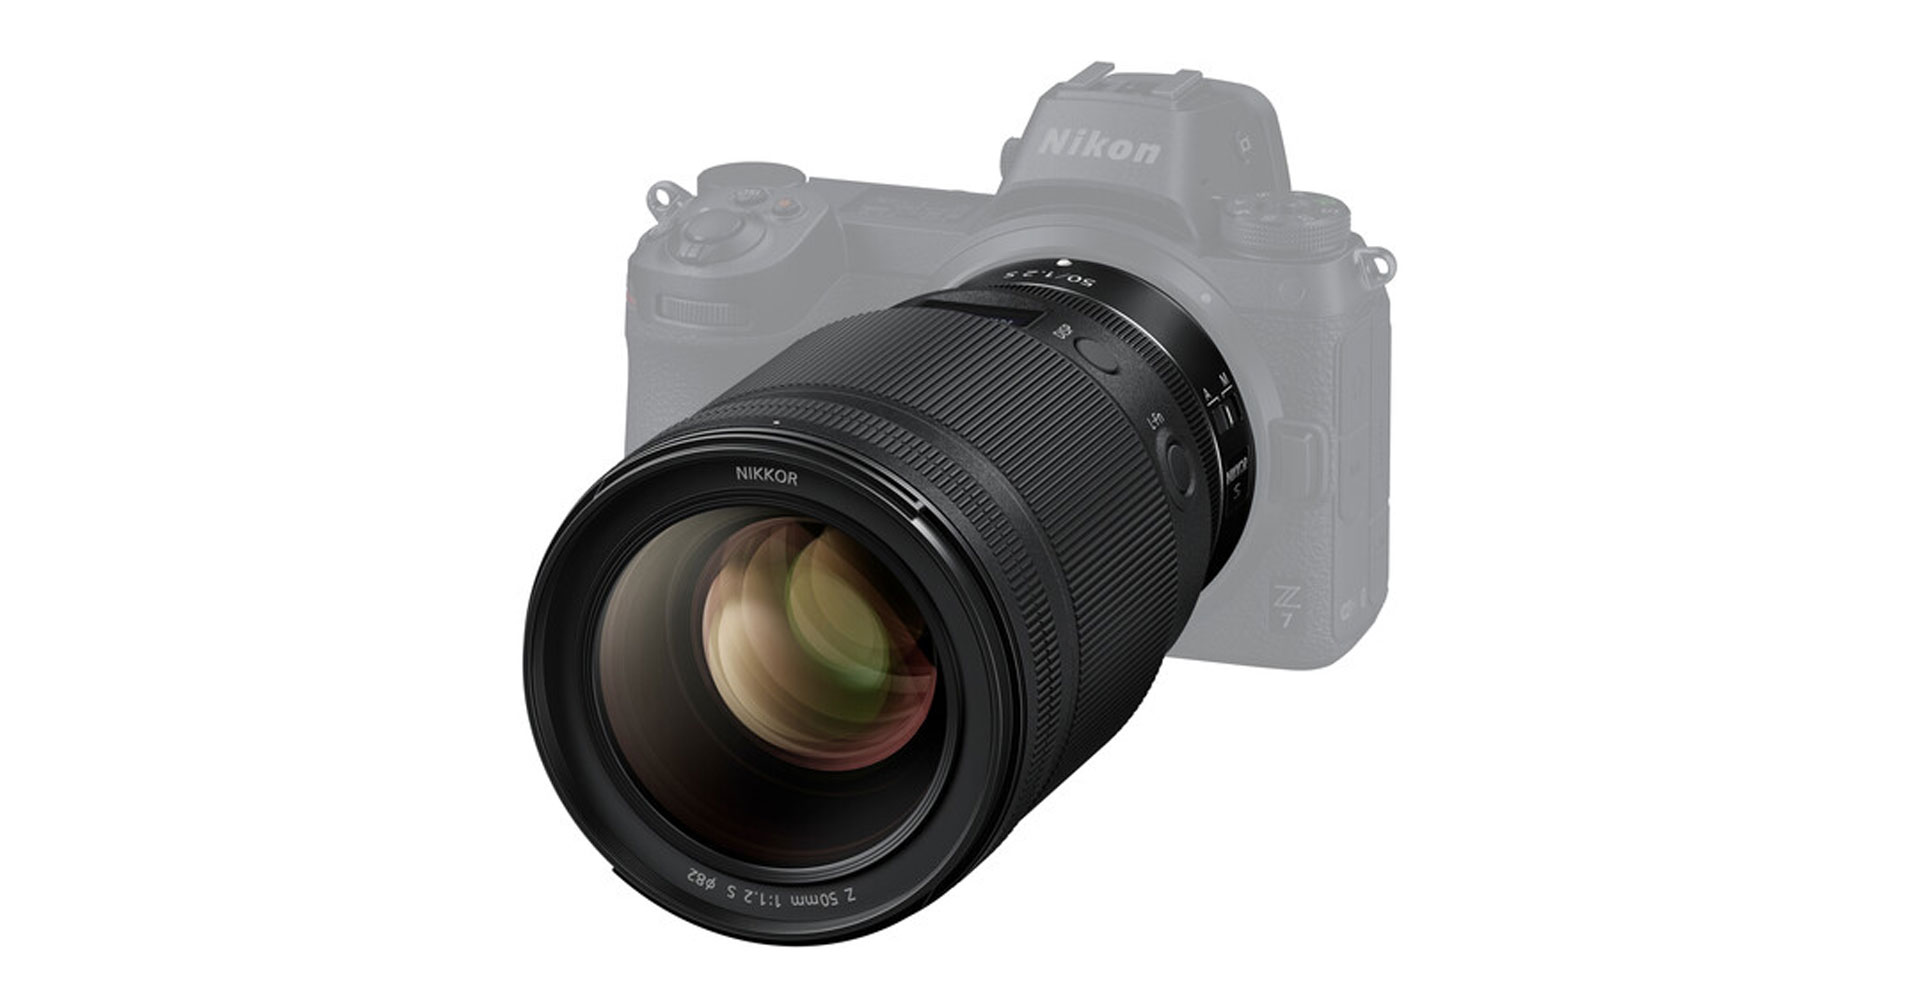 Nikon เพิ่มฟีเจอร์ linear focus ให้แก่เลนส์ Z-mount ถึง 3 รุ่น ผ่านเฟิร์มแวร์อัปเดต หมุนโฟกัสได้ละเอียดกว่าเดิม